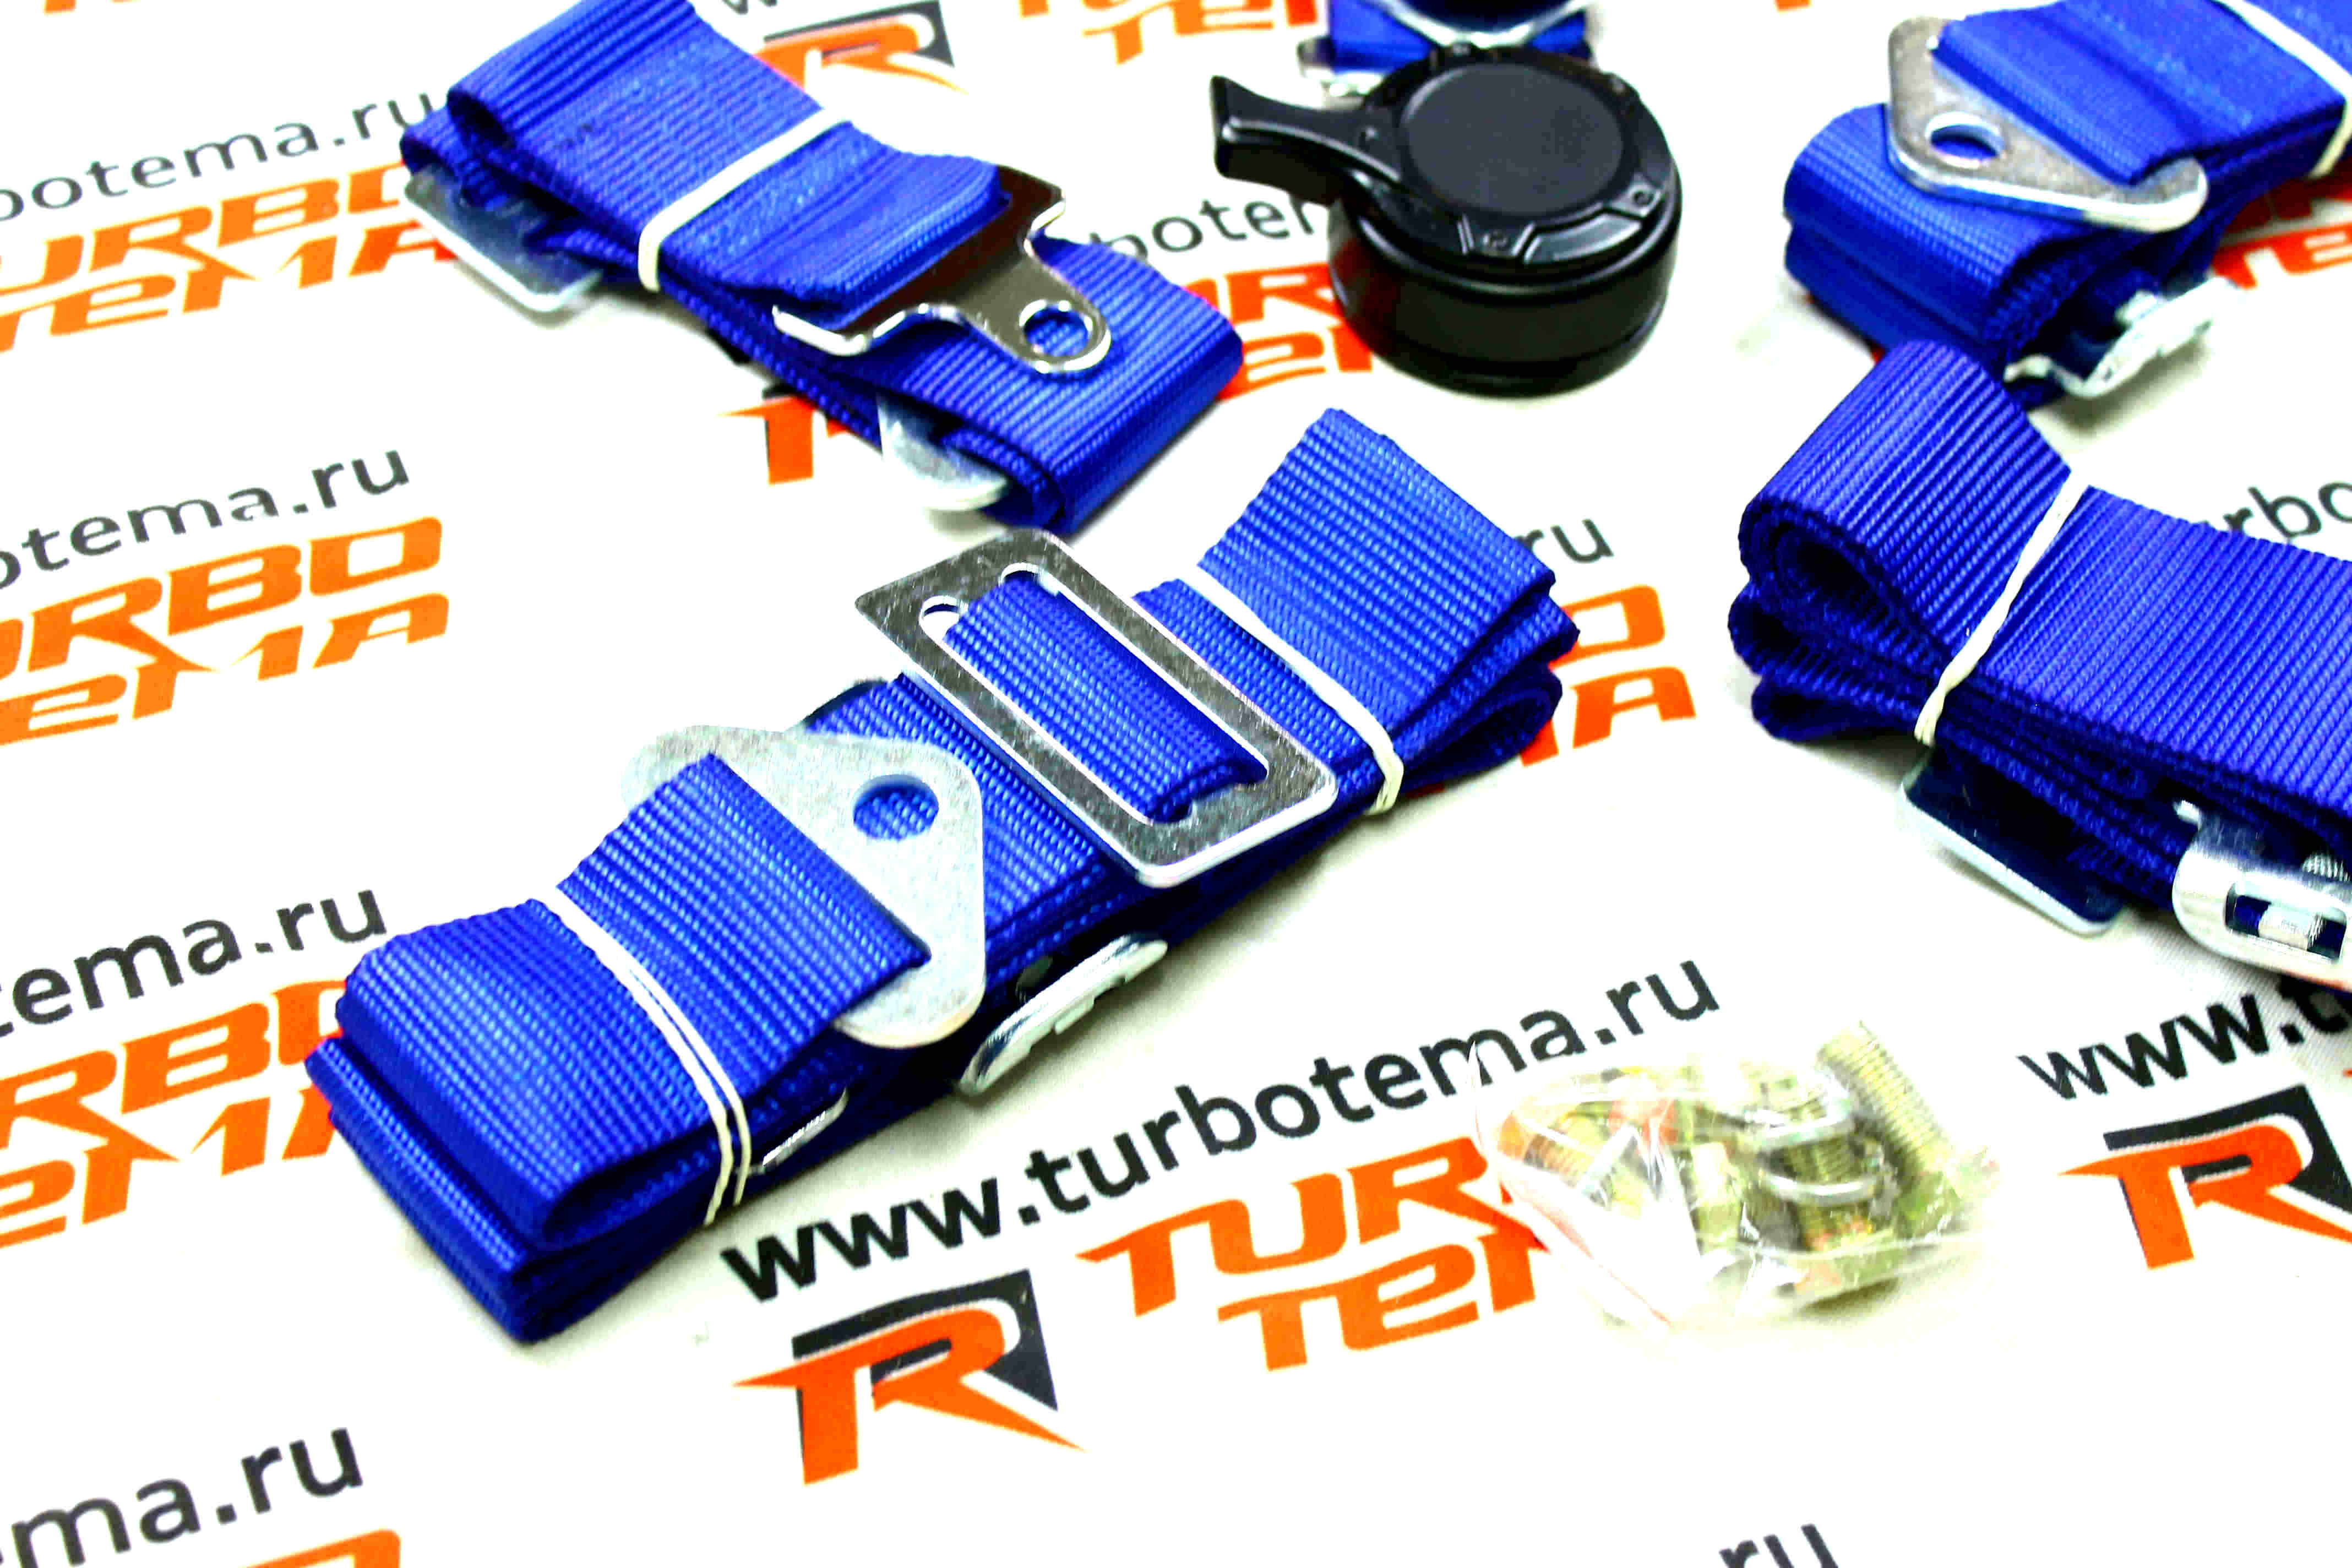 Ремни безопасности "TURBOTEMA" 5-ти точечные, 2" ширина, быстросъемные (синие) JBR4001-5. Фото �4